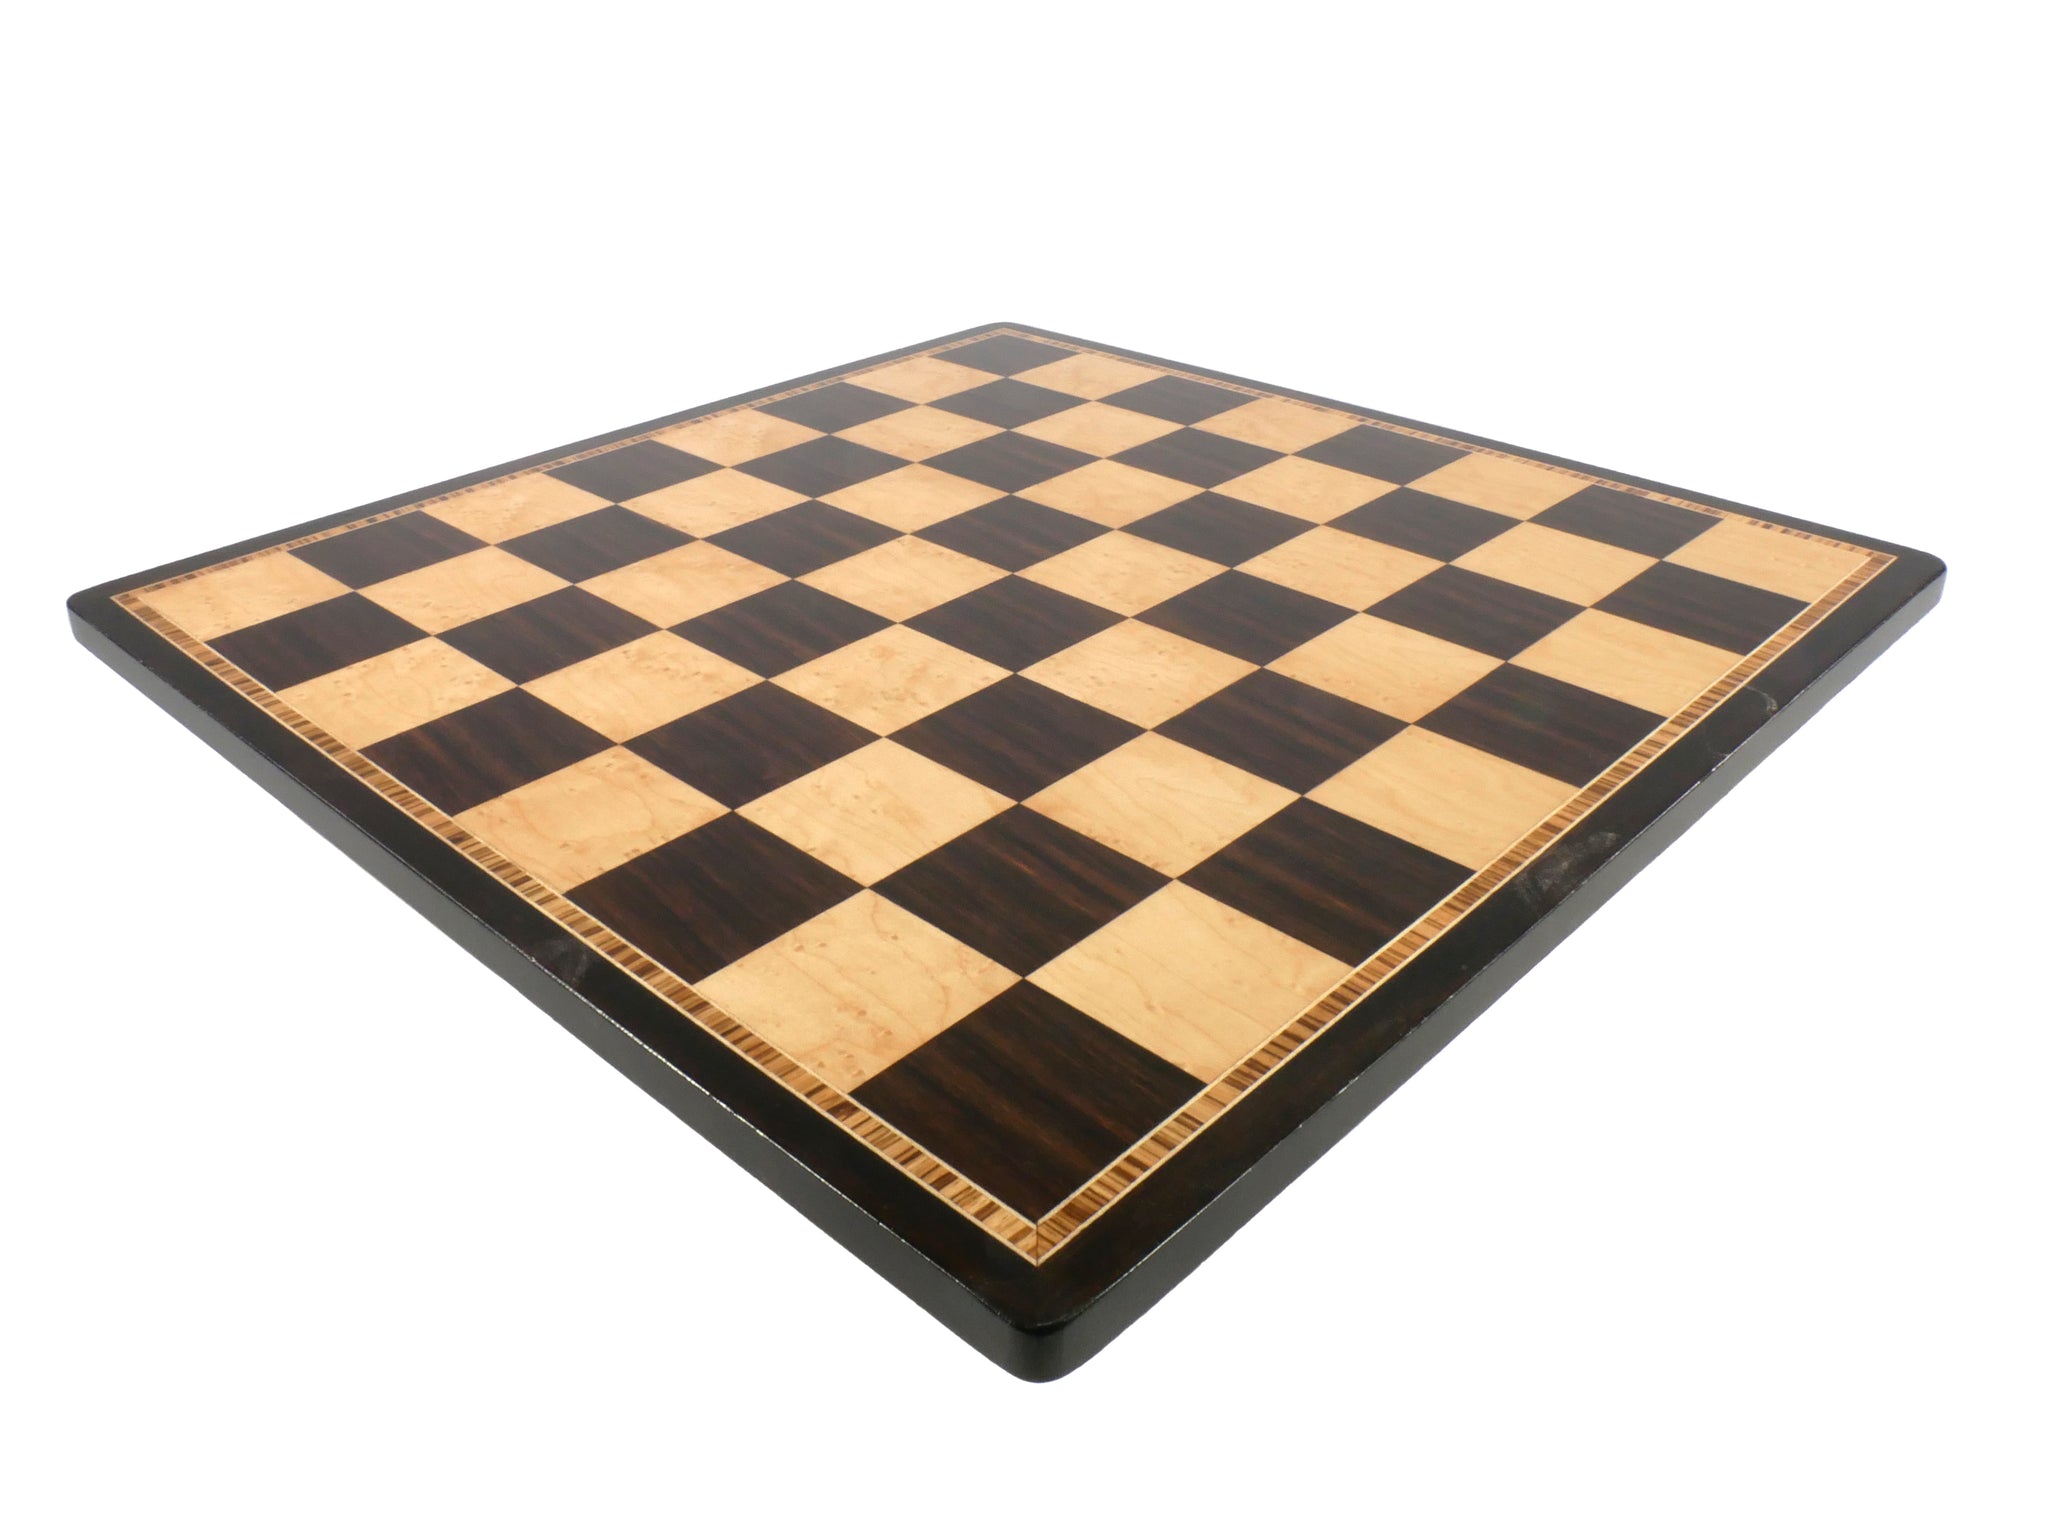 Chess Board - 17" Ebony & Birdseye Maple Chess Board